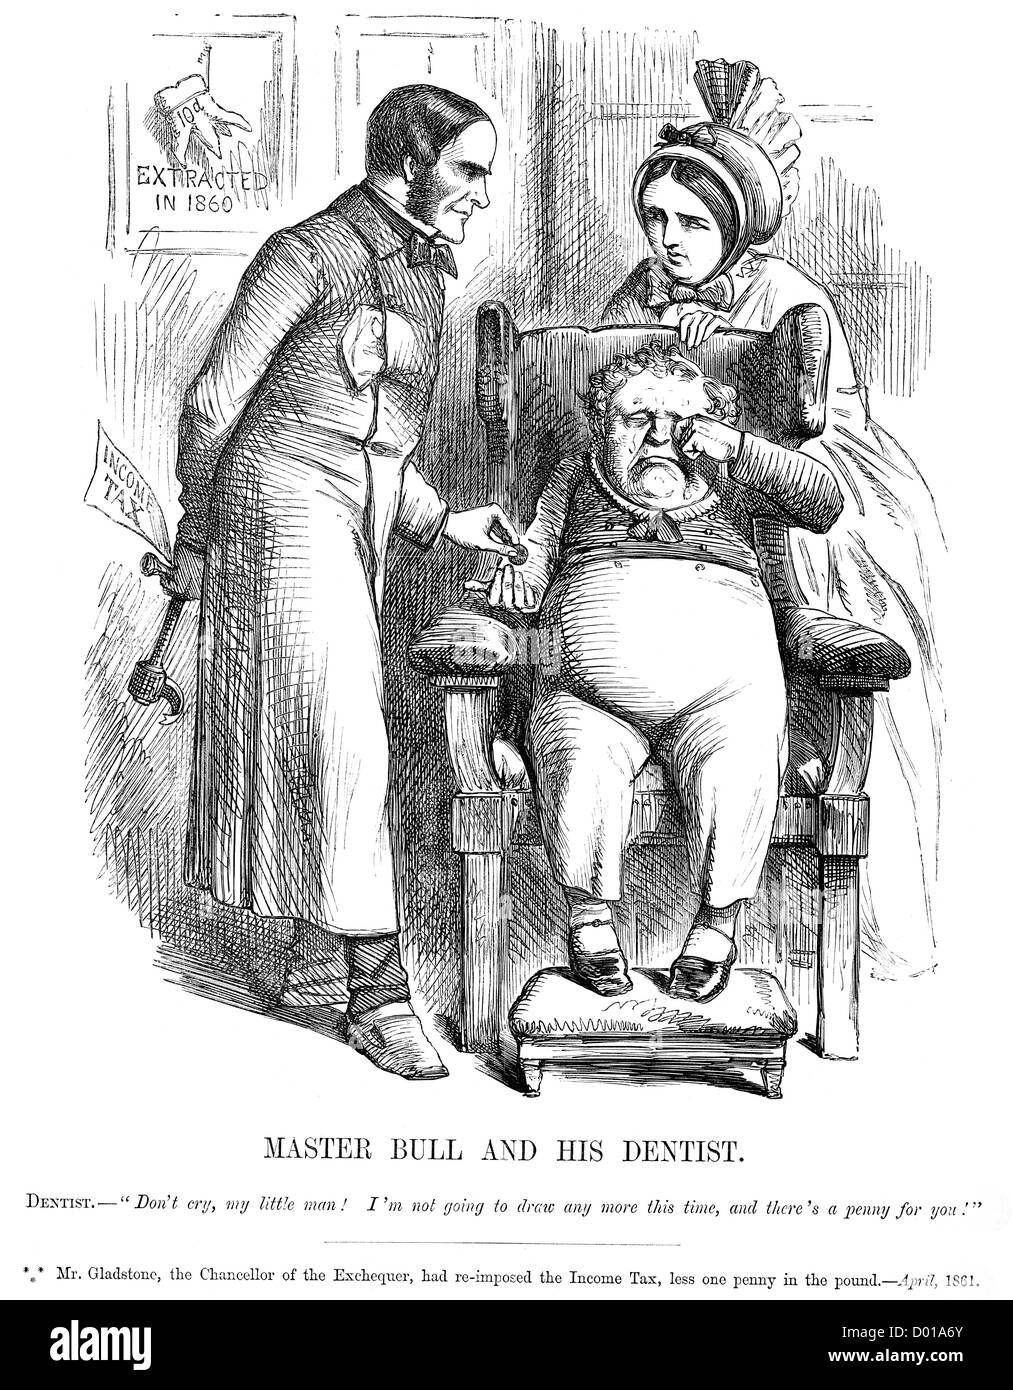 Master-Bull und seinen Zahnarzt. Politische Karikatur über Gladstone Verhängung der Einkommensteuer April 1861 Stockfoto